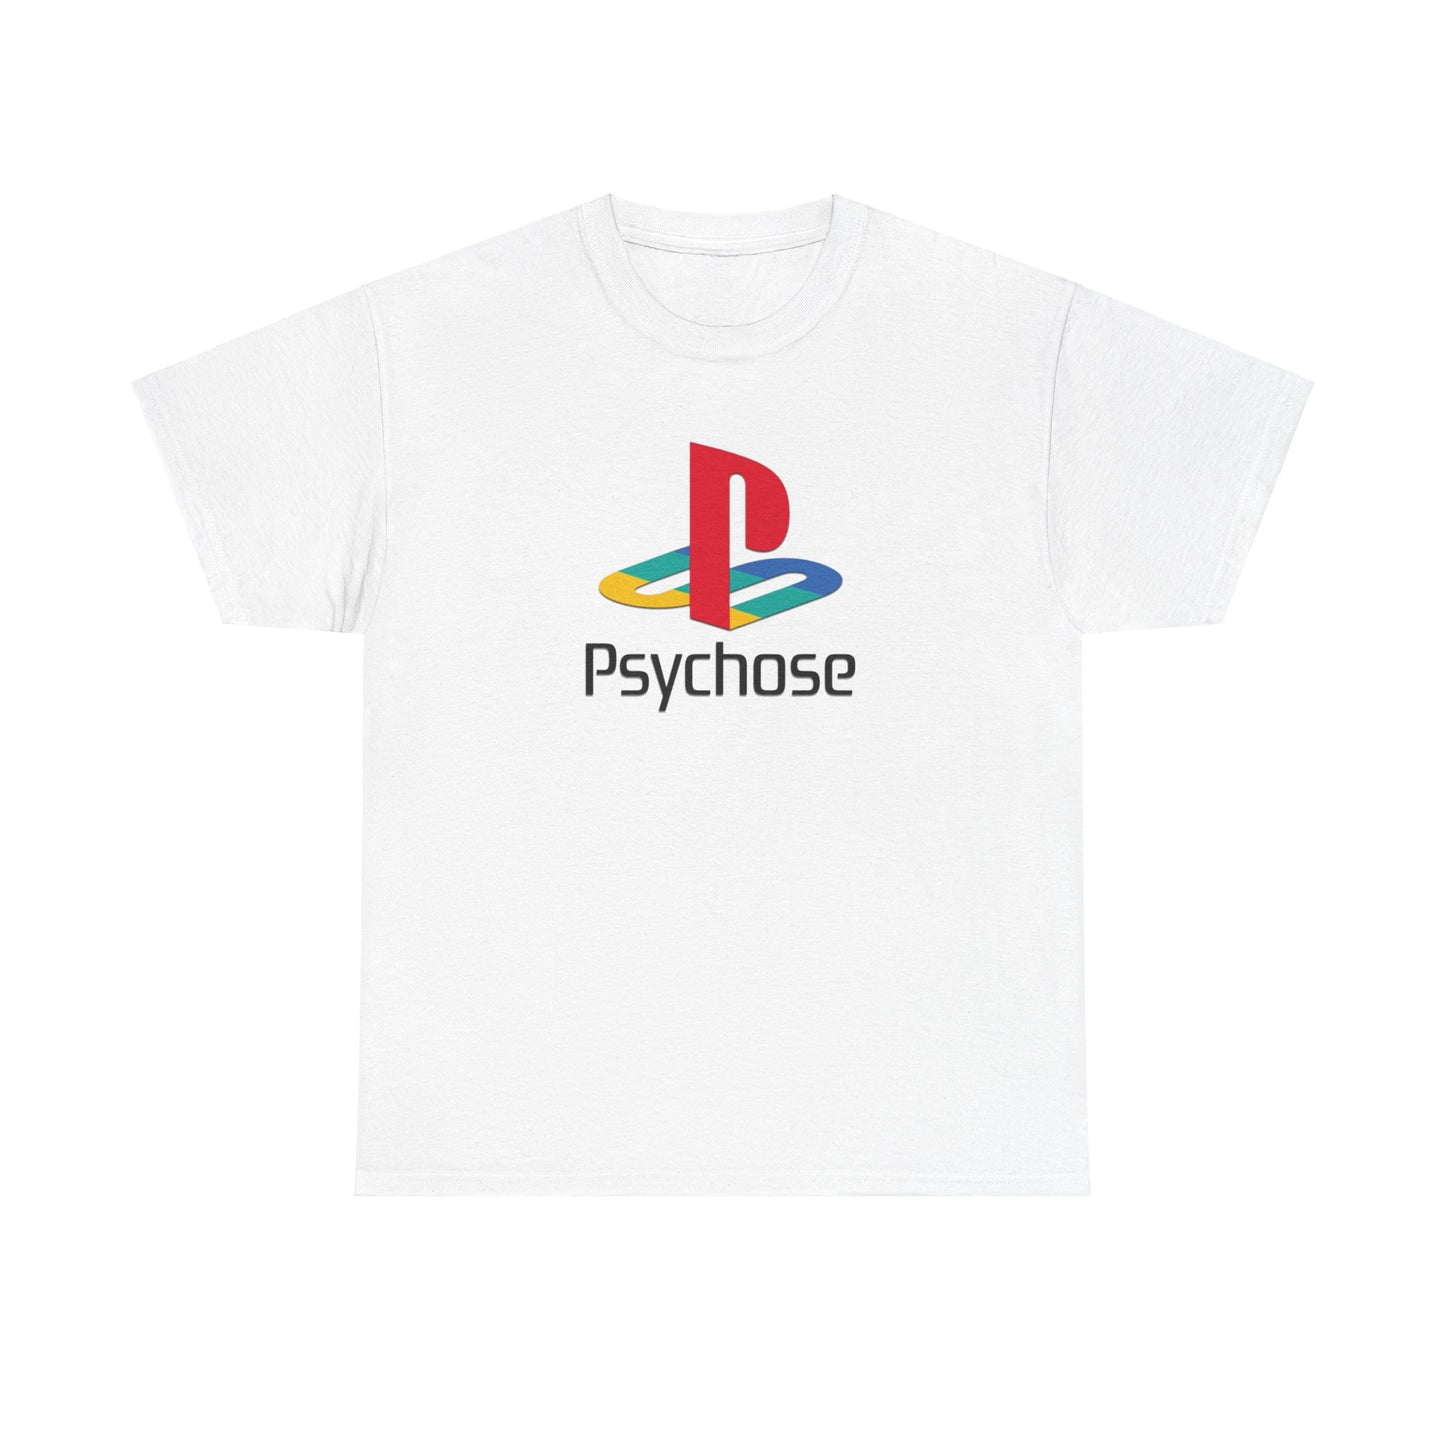 Entdecke unser exklusives T-Shirt mit dem legendären Playstation Logo. Perfekt für Gaming-Enthusiasten und Fans. Hochwertige Baumwolle, ultimativer Komfort. Hol dir jetzt dein stylisches Statement-Piece! Playstation Psycho T-Shirt als perfektes Geschenk für Freunde und Familie!